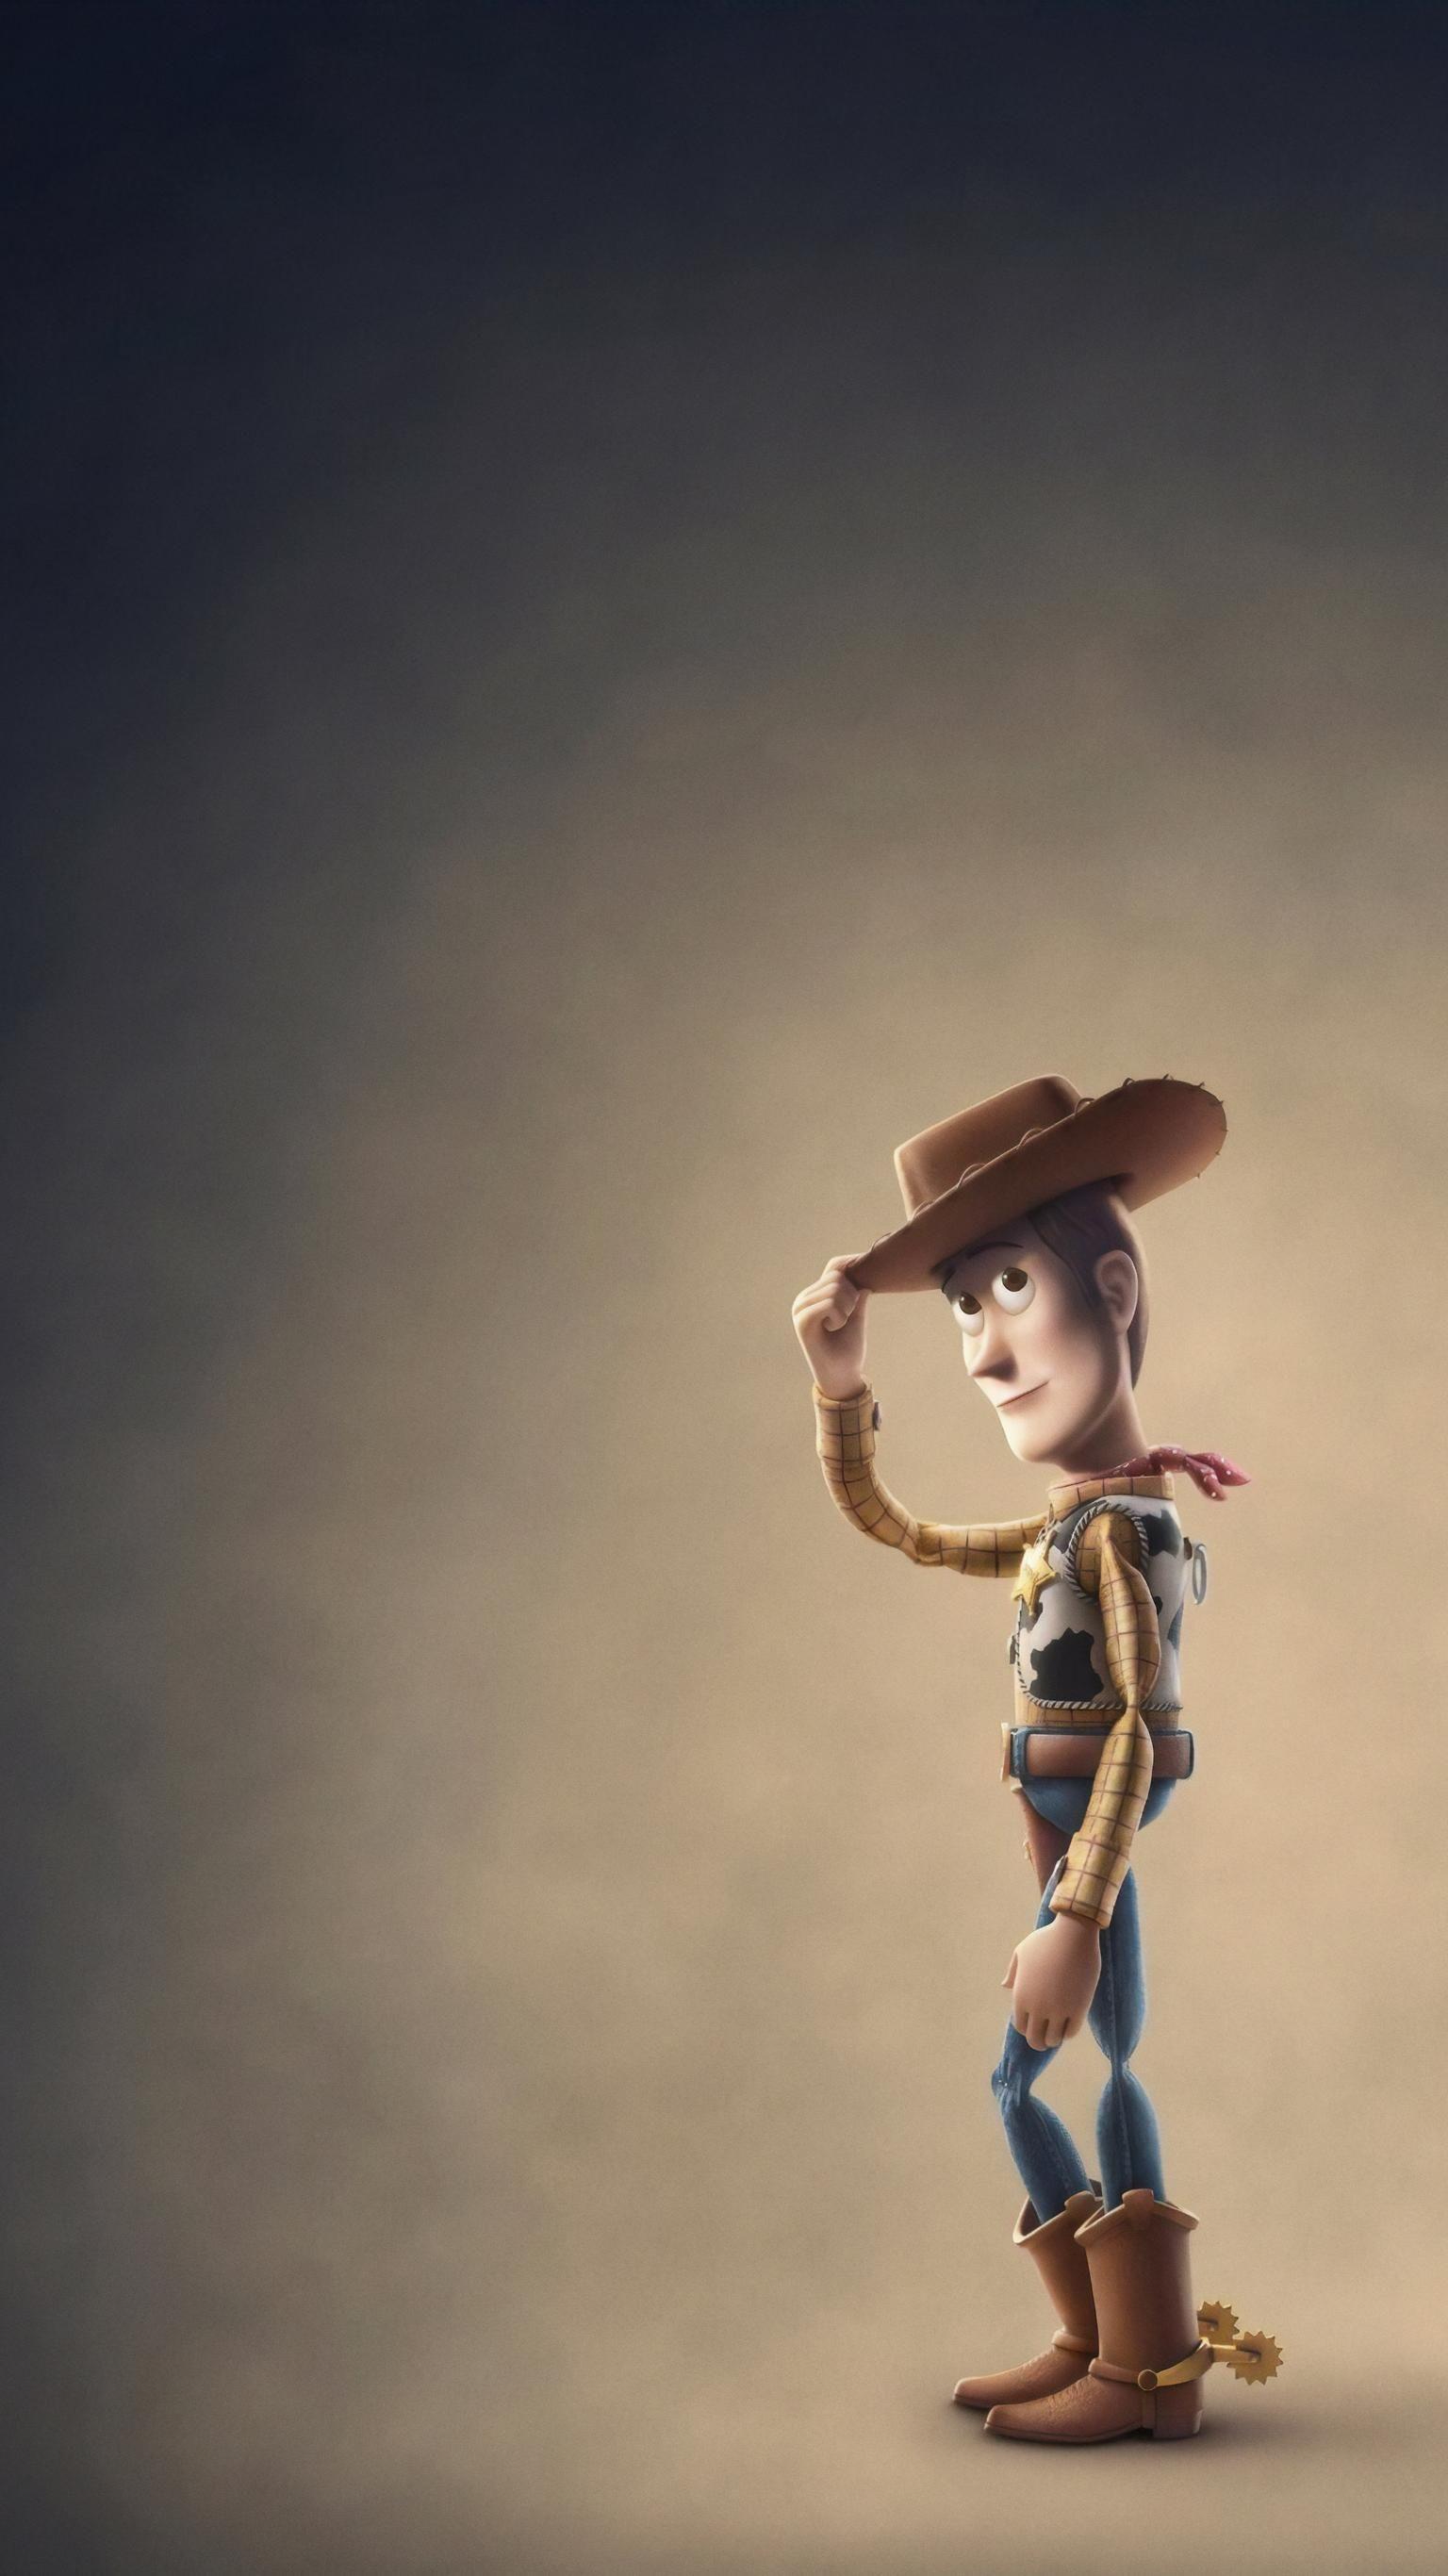 Toy Story 4 (2019) Phone Wallpaper. Películas completas, Peliculas de disney pixar, Toy story